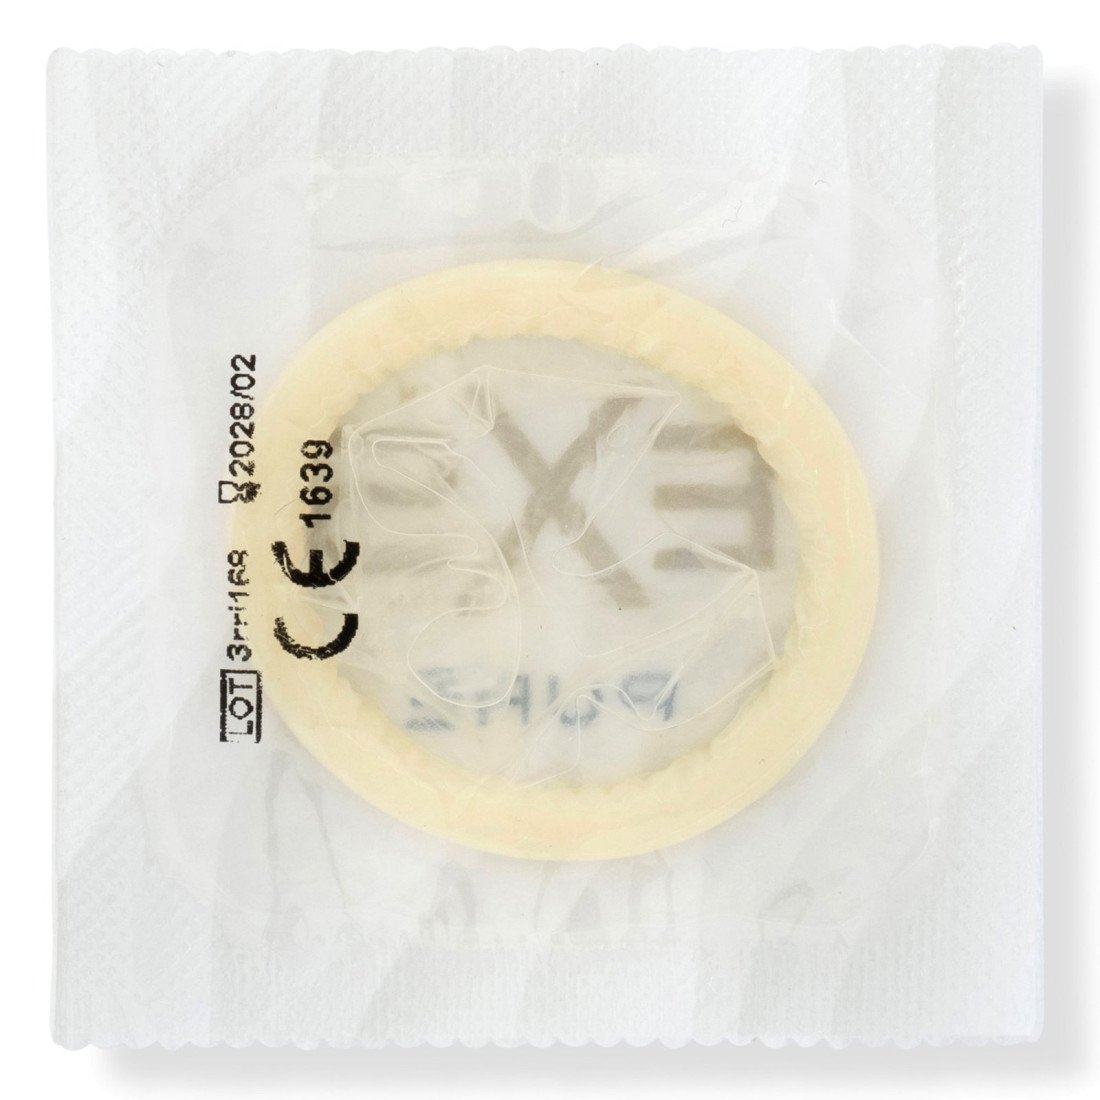 Labai ploni prezervatyvai „Pure“, 48 vnt. - EXS Condoms